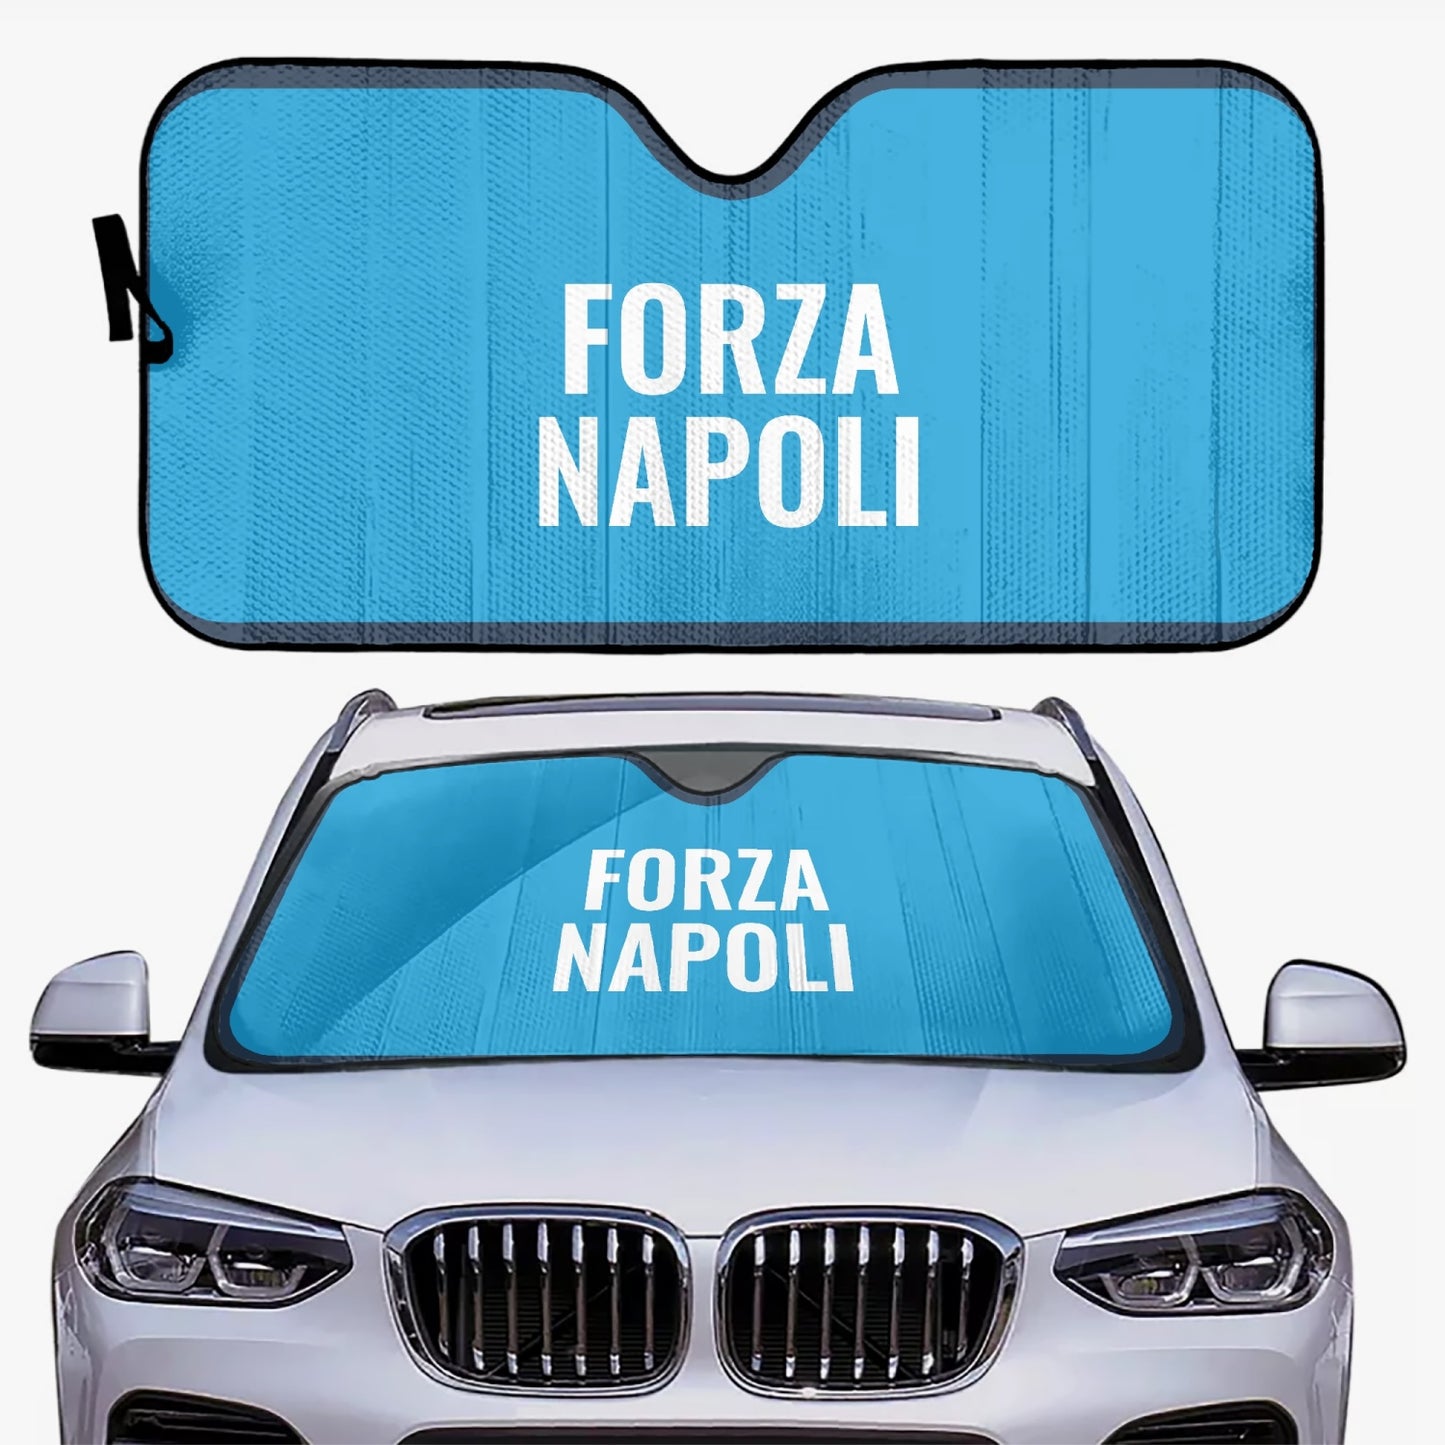 Forza Napoli - Car Sun Shade